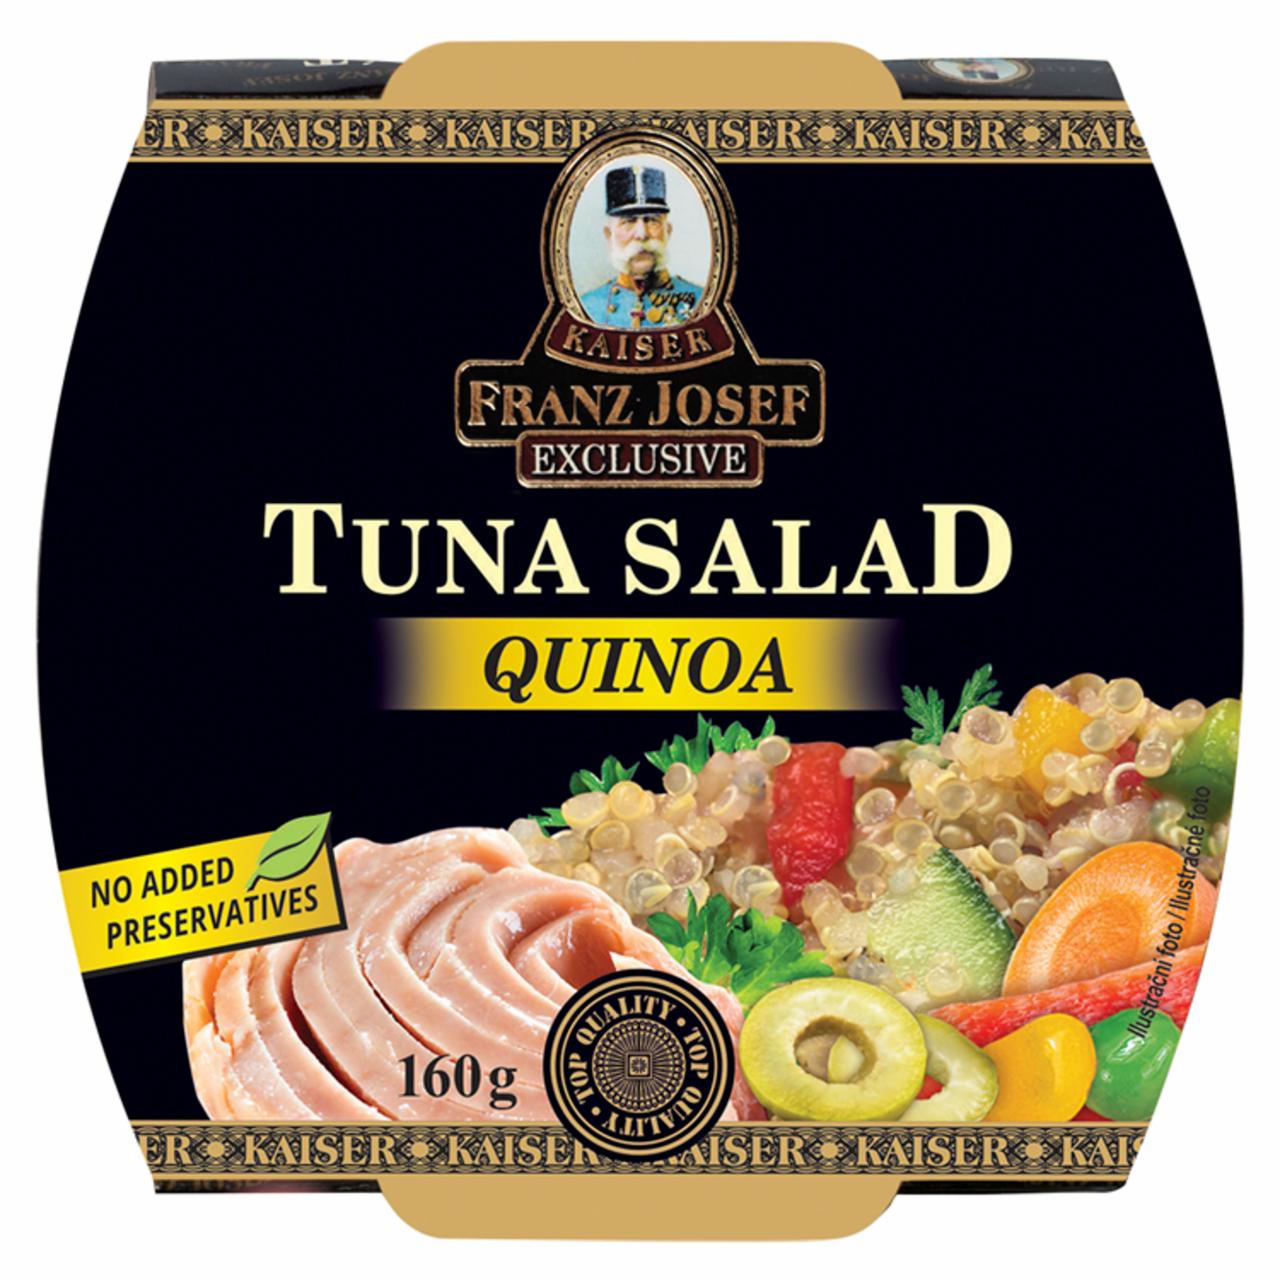 Képek - Kaiser Franz Josef Exclusive quinoa tonhalsaláta 160 g